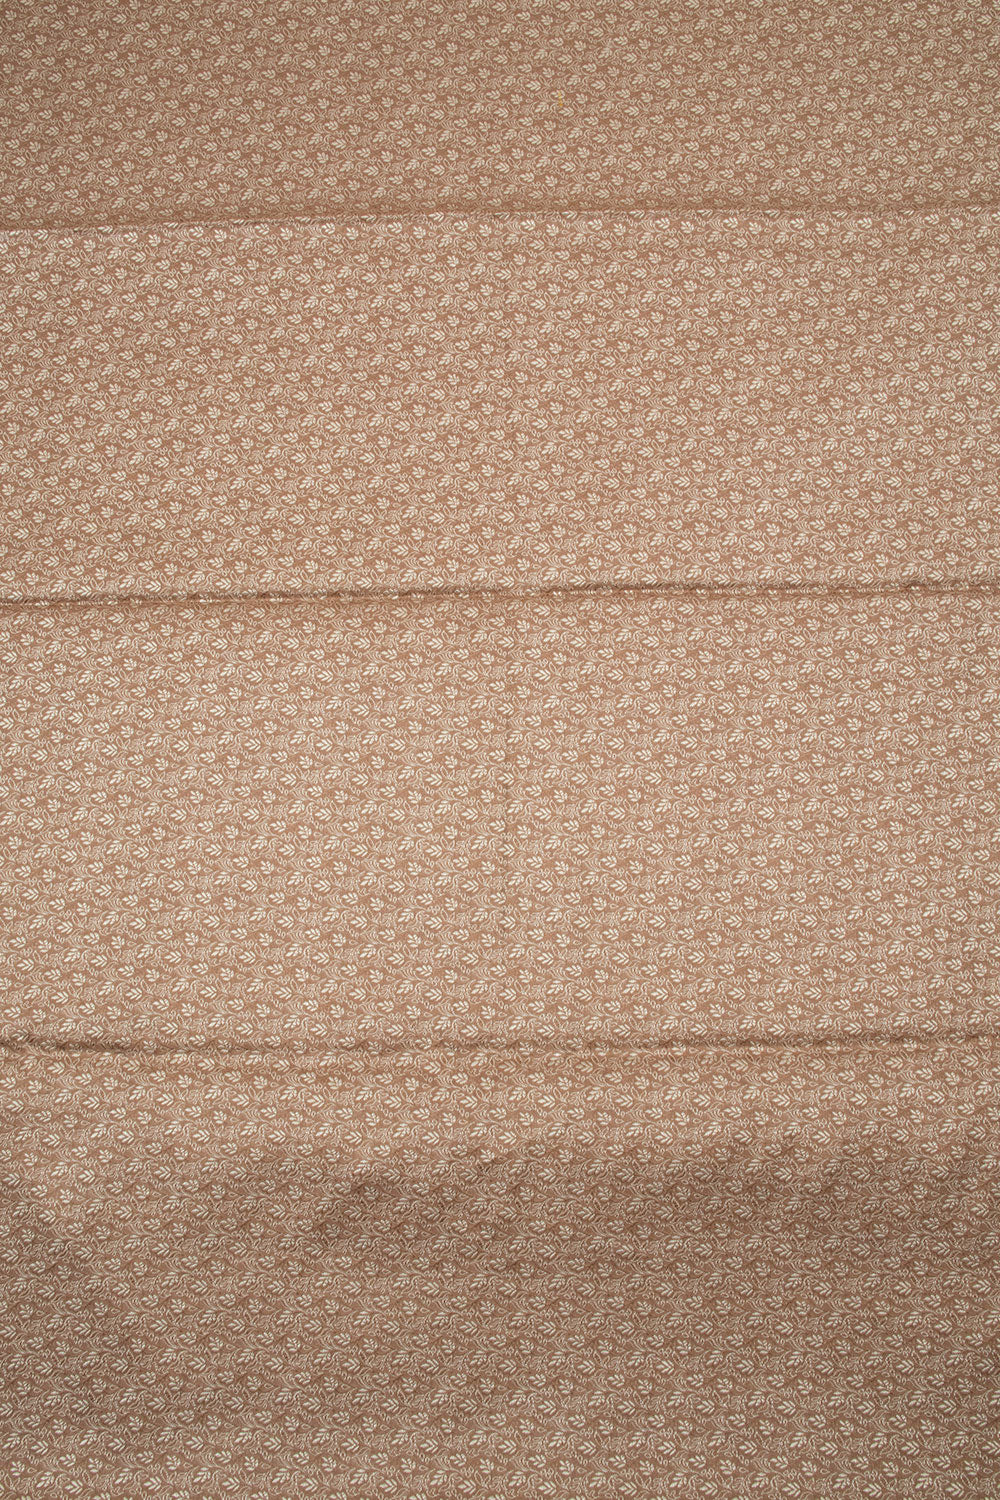 Brown Banarasi Cotton 3-Piece Salwar Suit Material 10063166